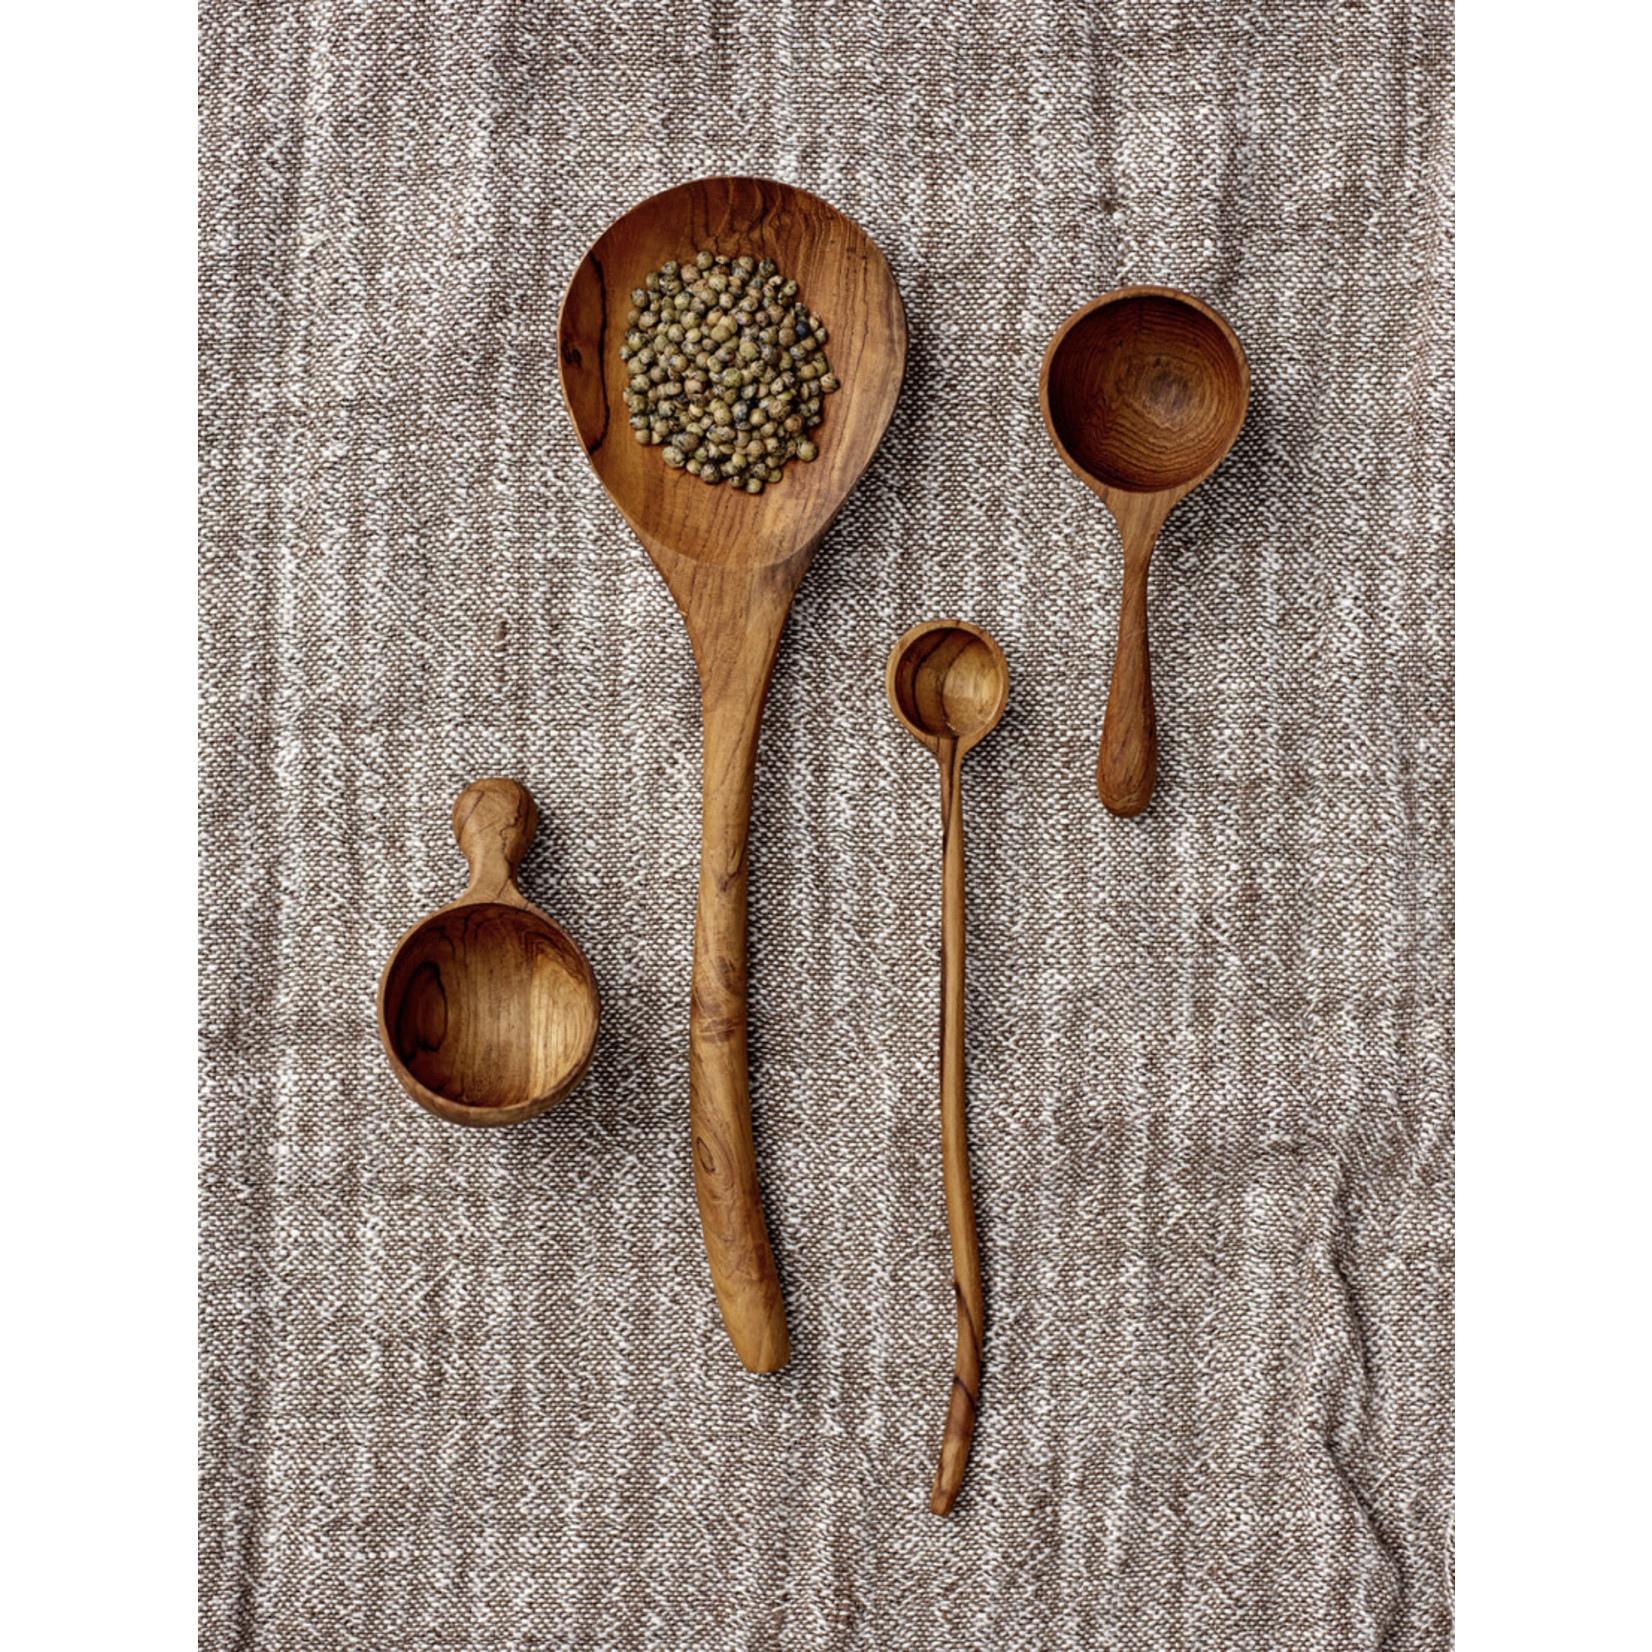 3" Hand-Carved Teakwood Spoon/Scoop